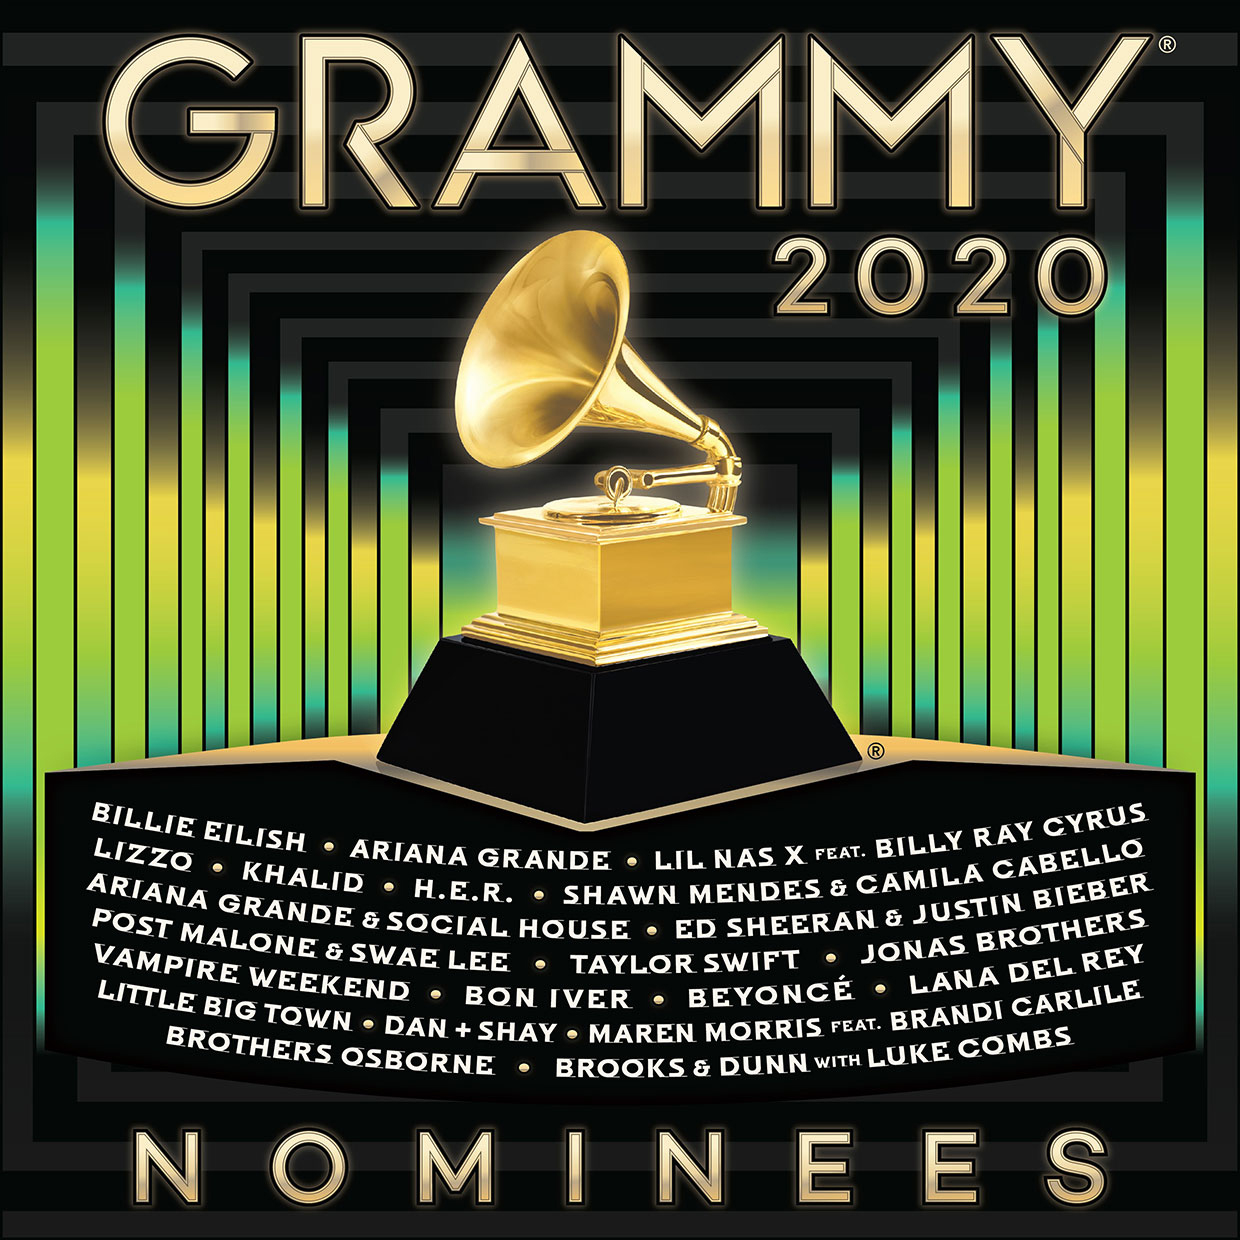 Álbum do Grammy Awards 2020 traz duas faixas da Ariana Grande